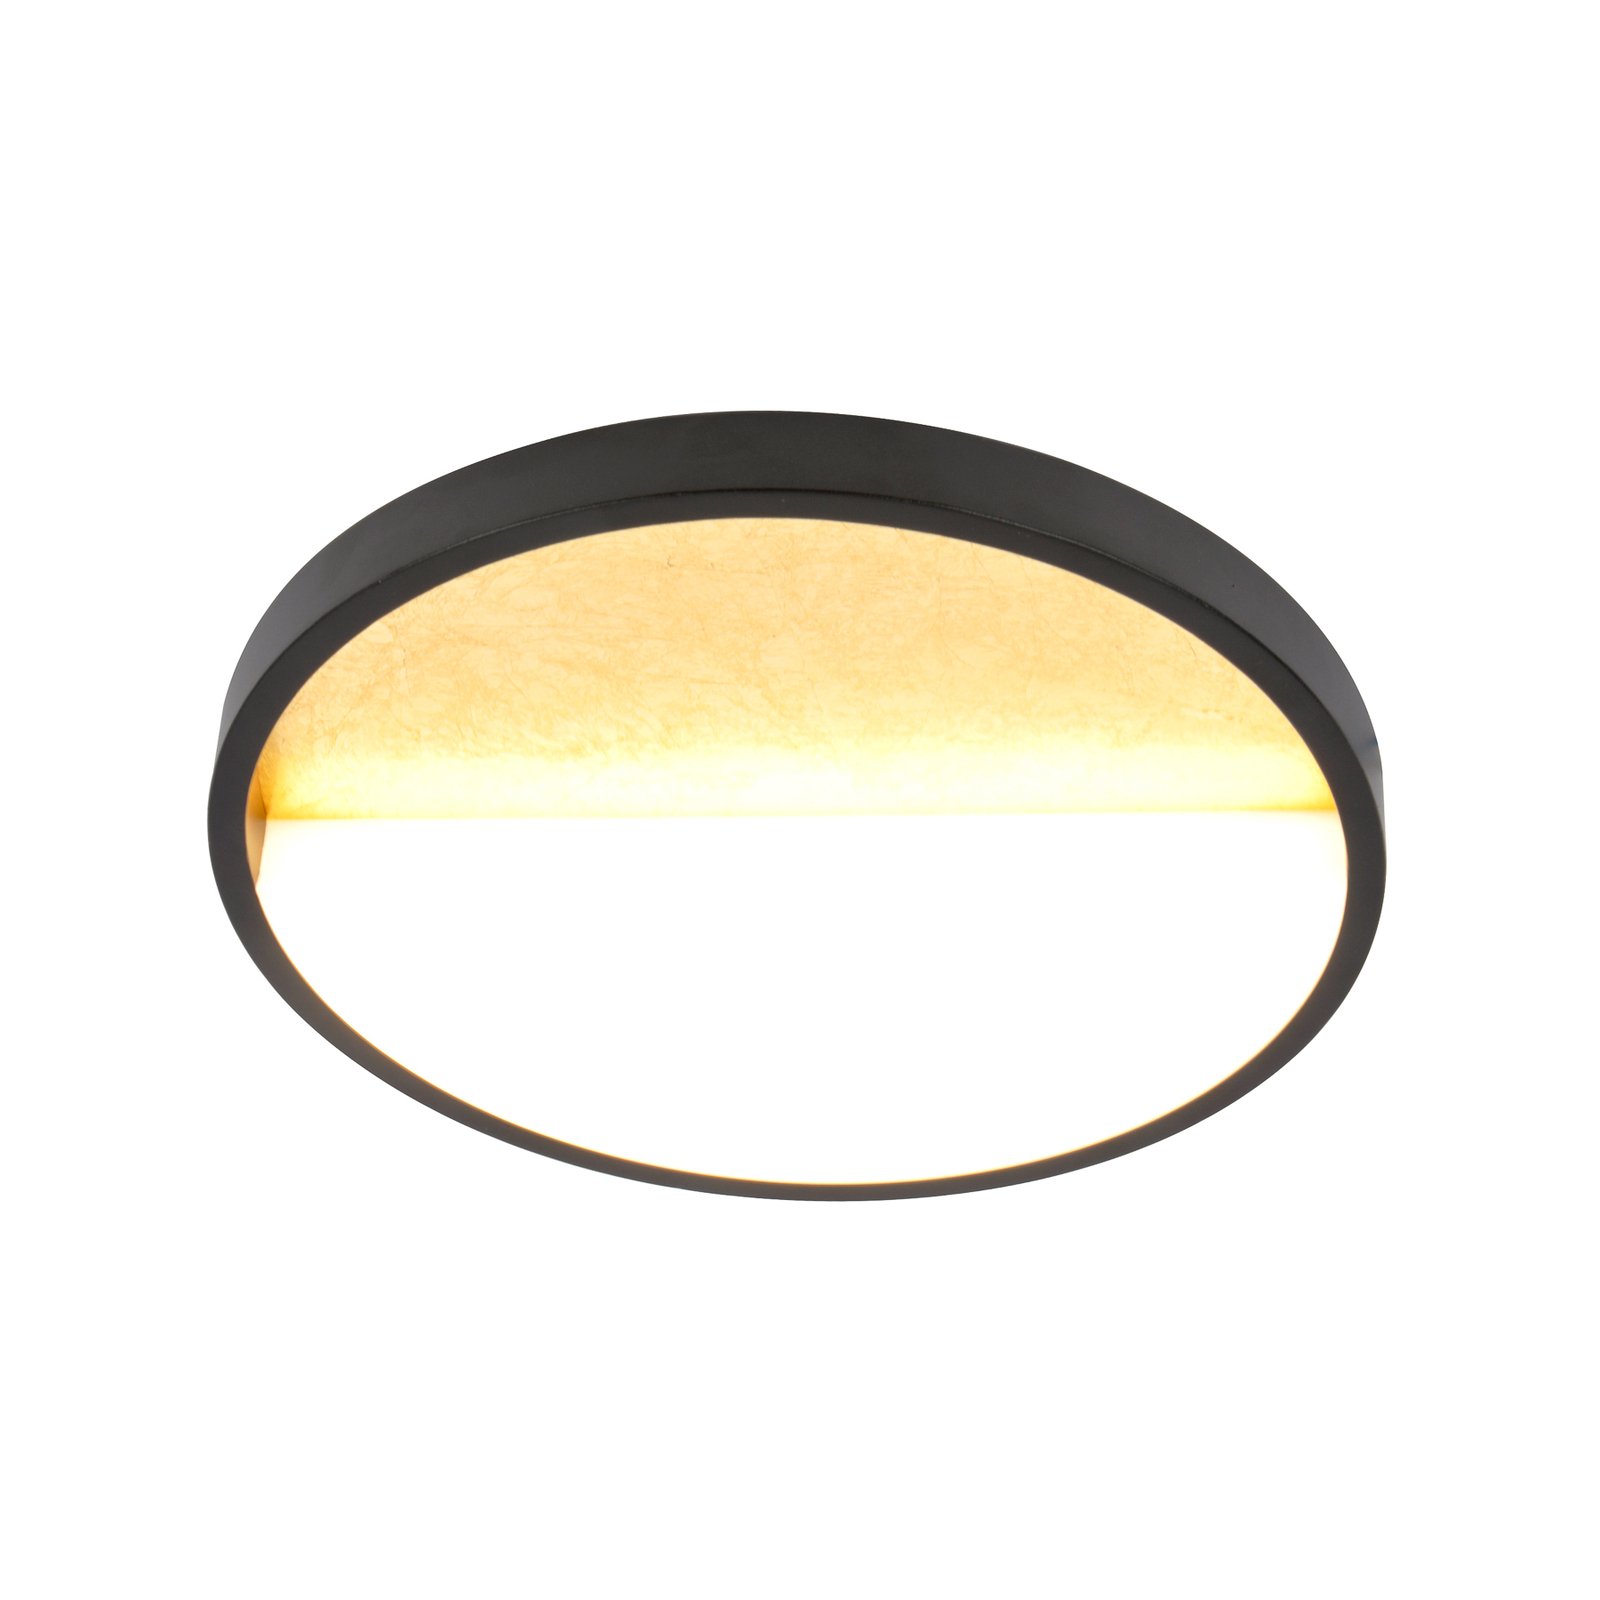 Vista LED stenska svetilka, zlata/črna, Ø 30 cm